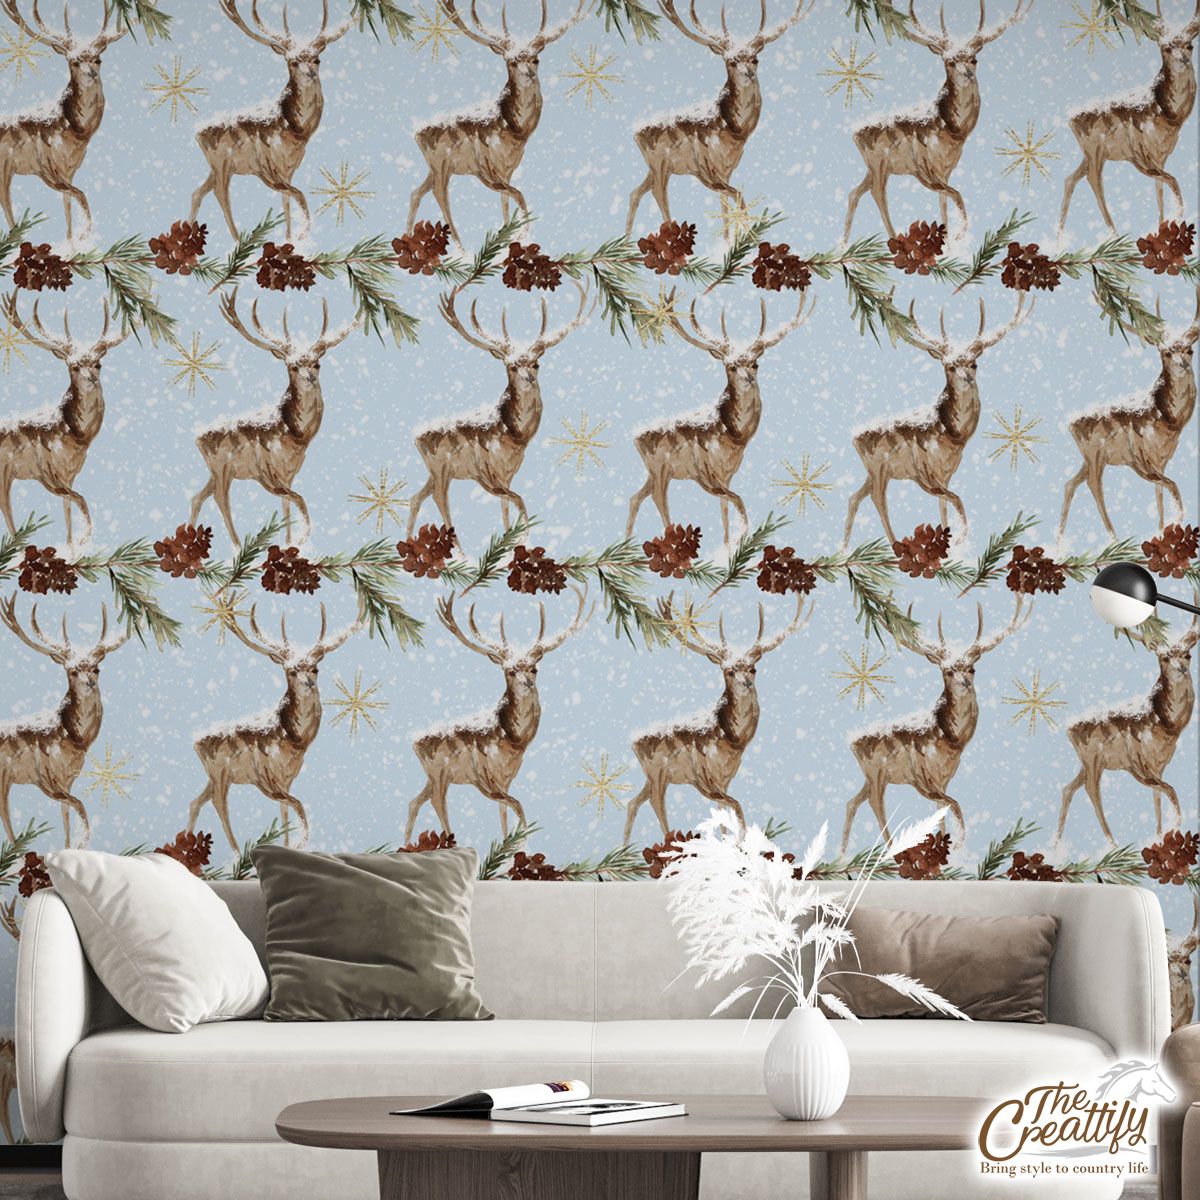 Reindeer, Christmas Reindeer And Pine Tree Branch Wall Mural